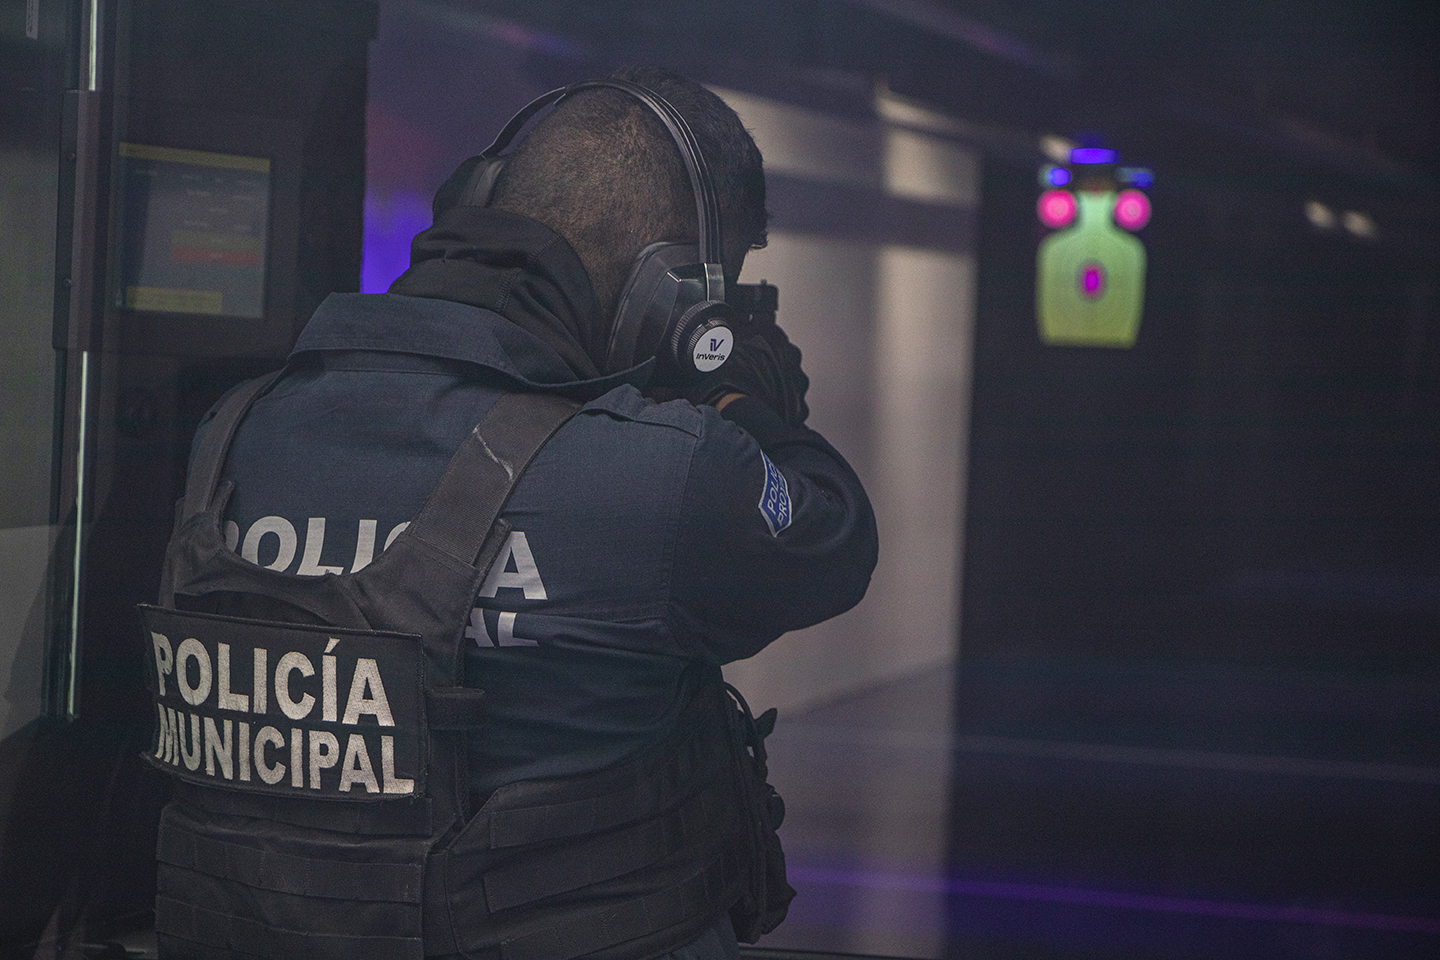 Policía municipal Querétaro - Stand de Tiro Virtual